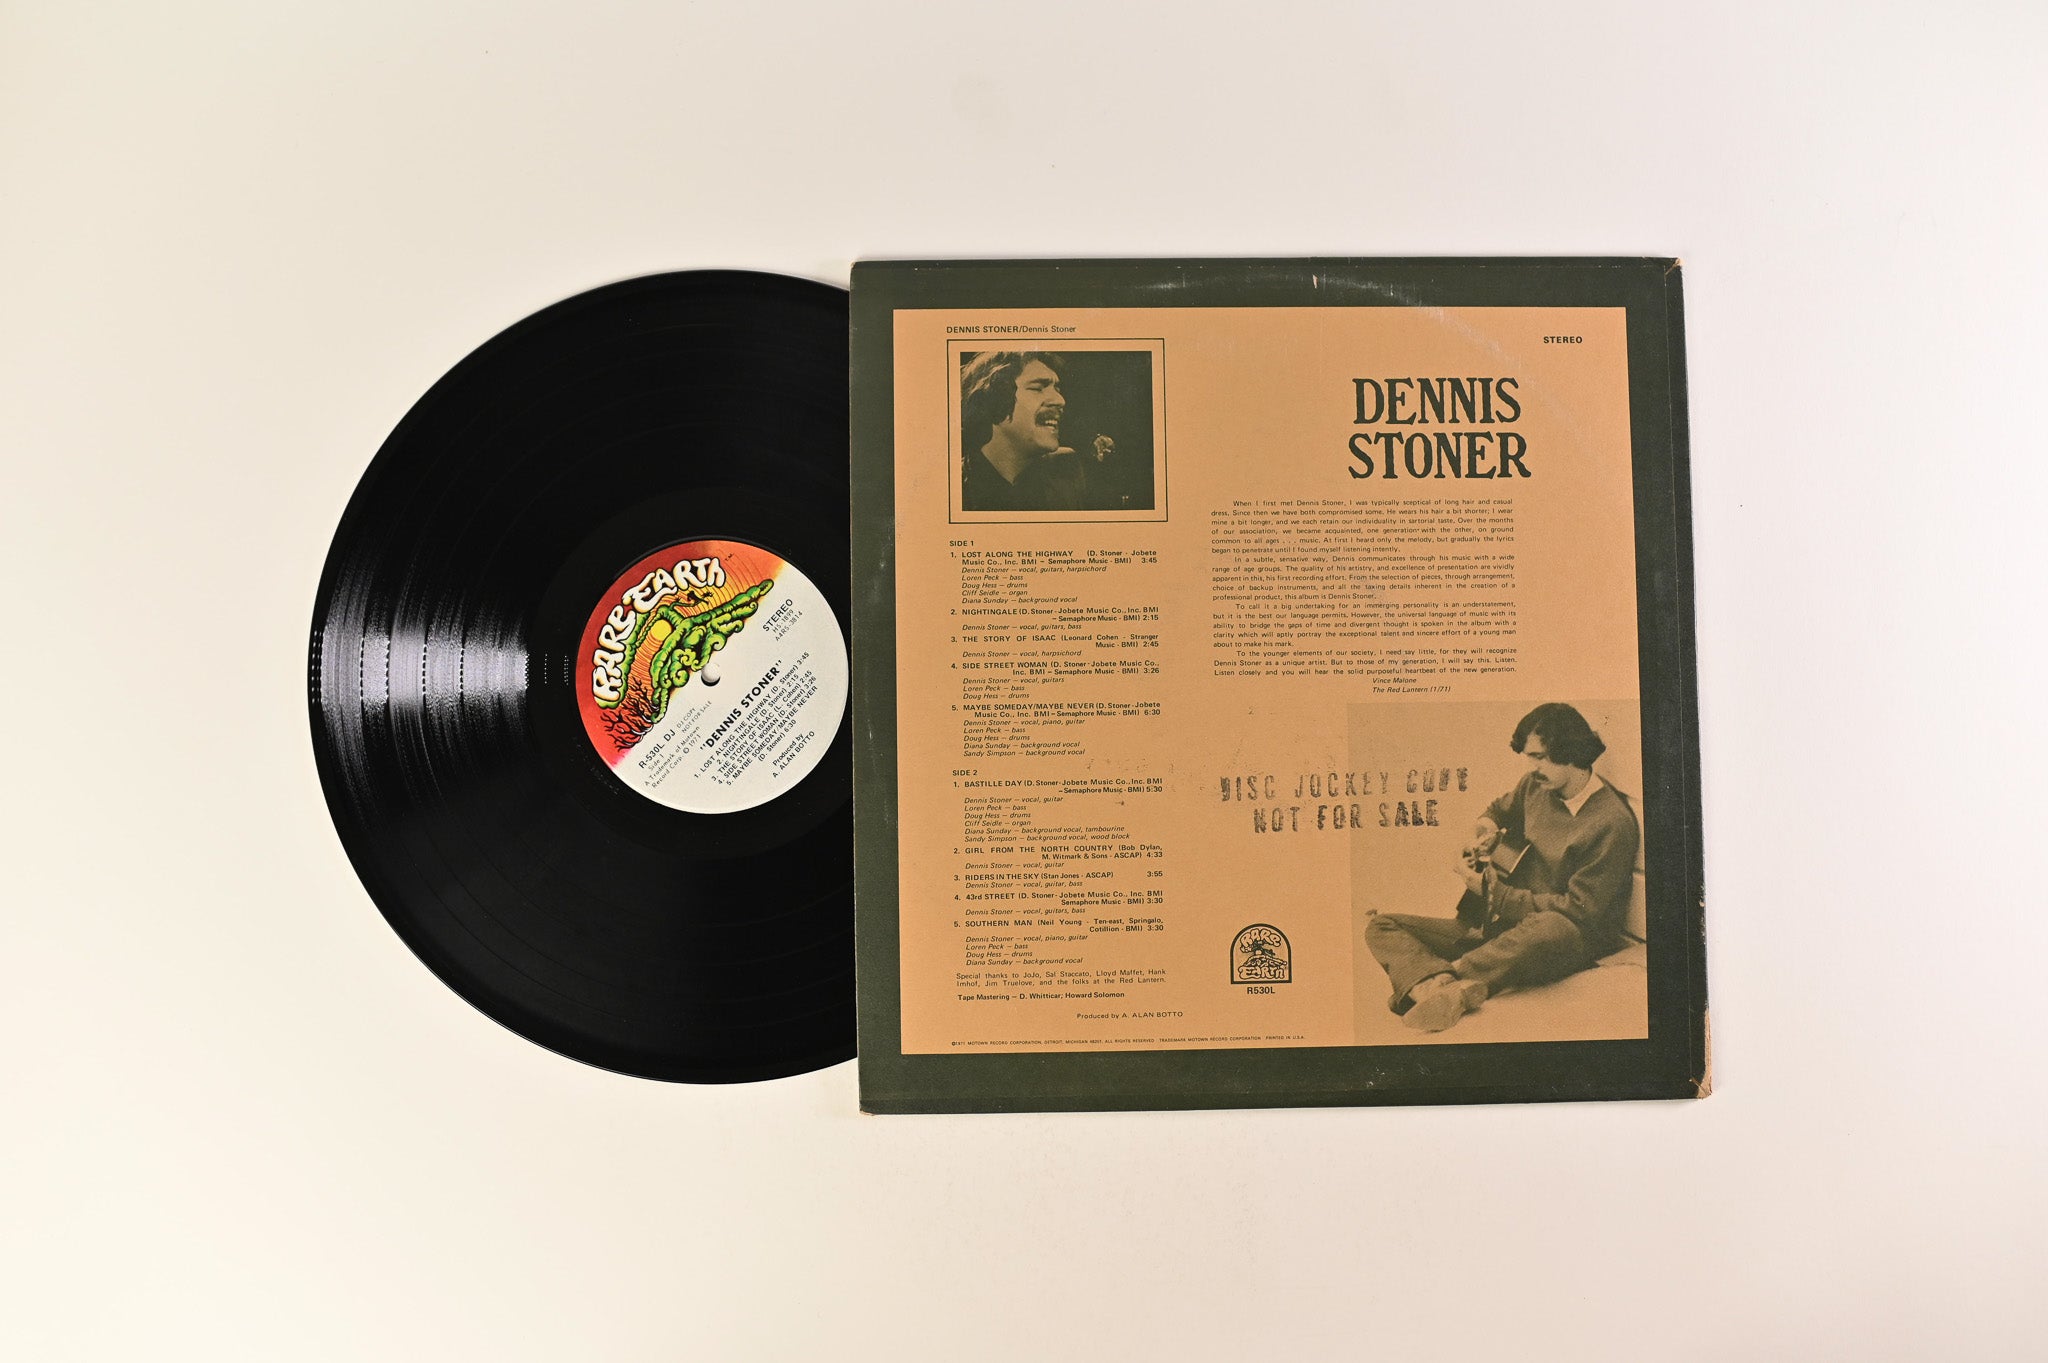 Dennis Stoner - Dennis Stoner on Rare Earth Promo